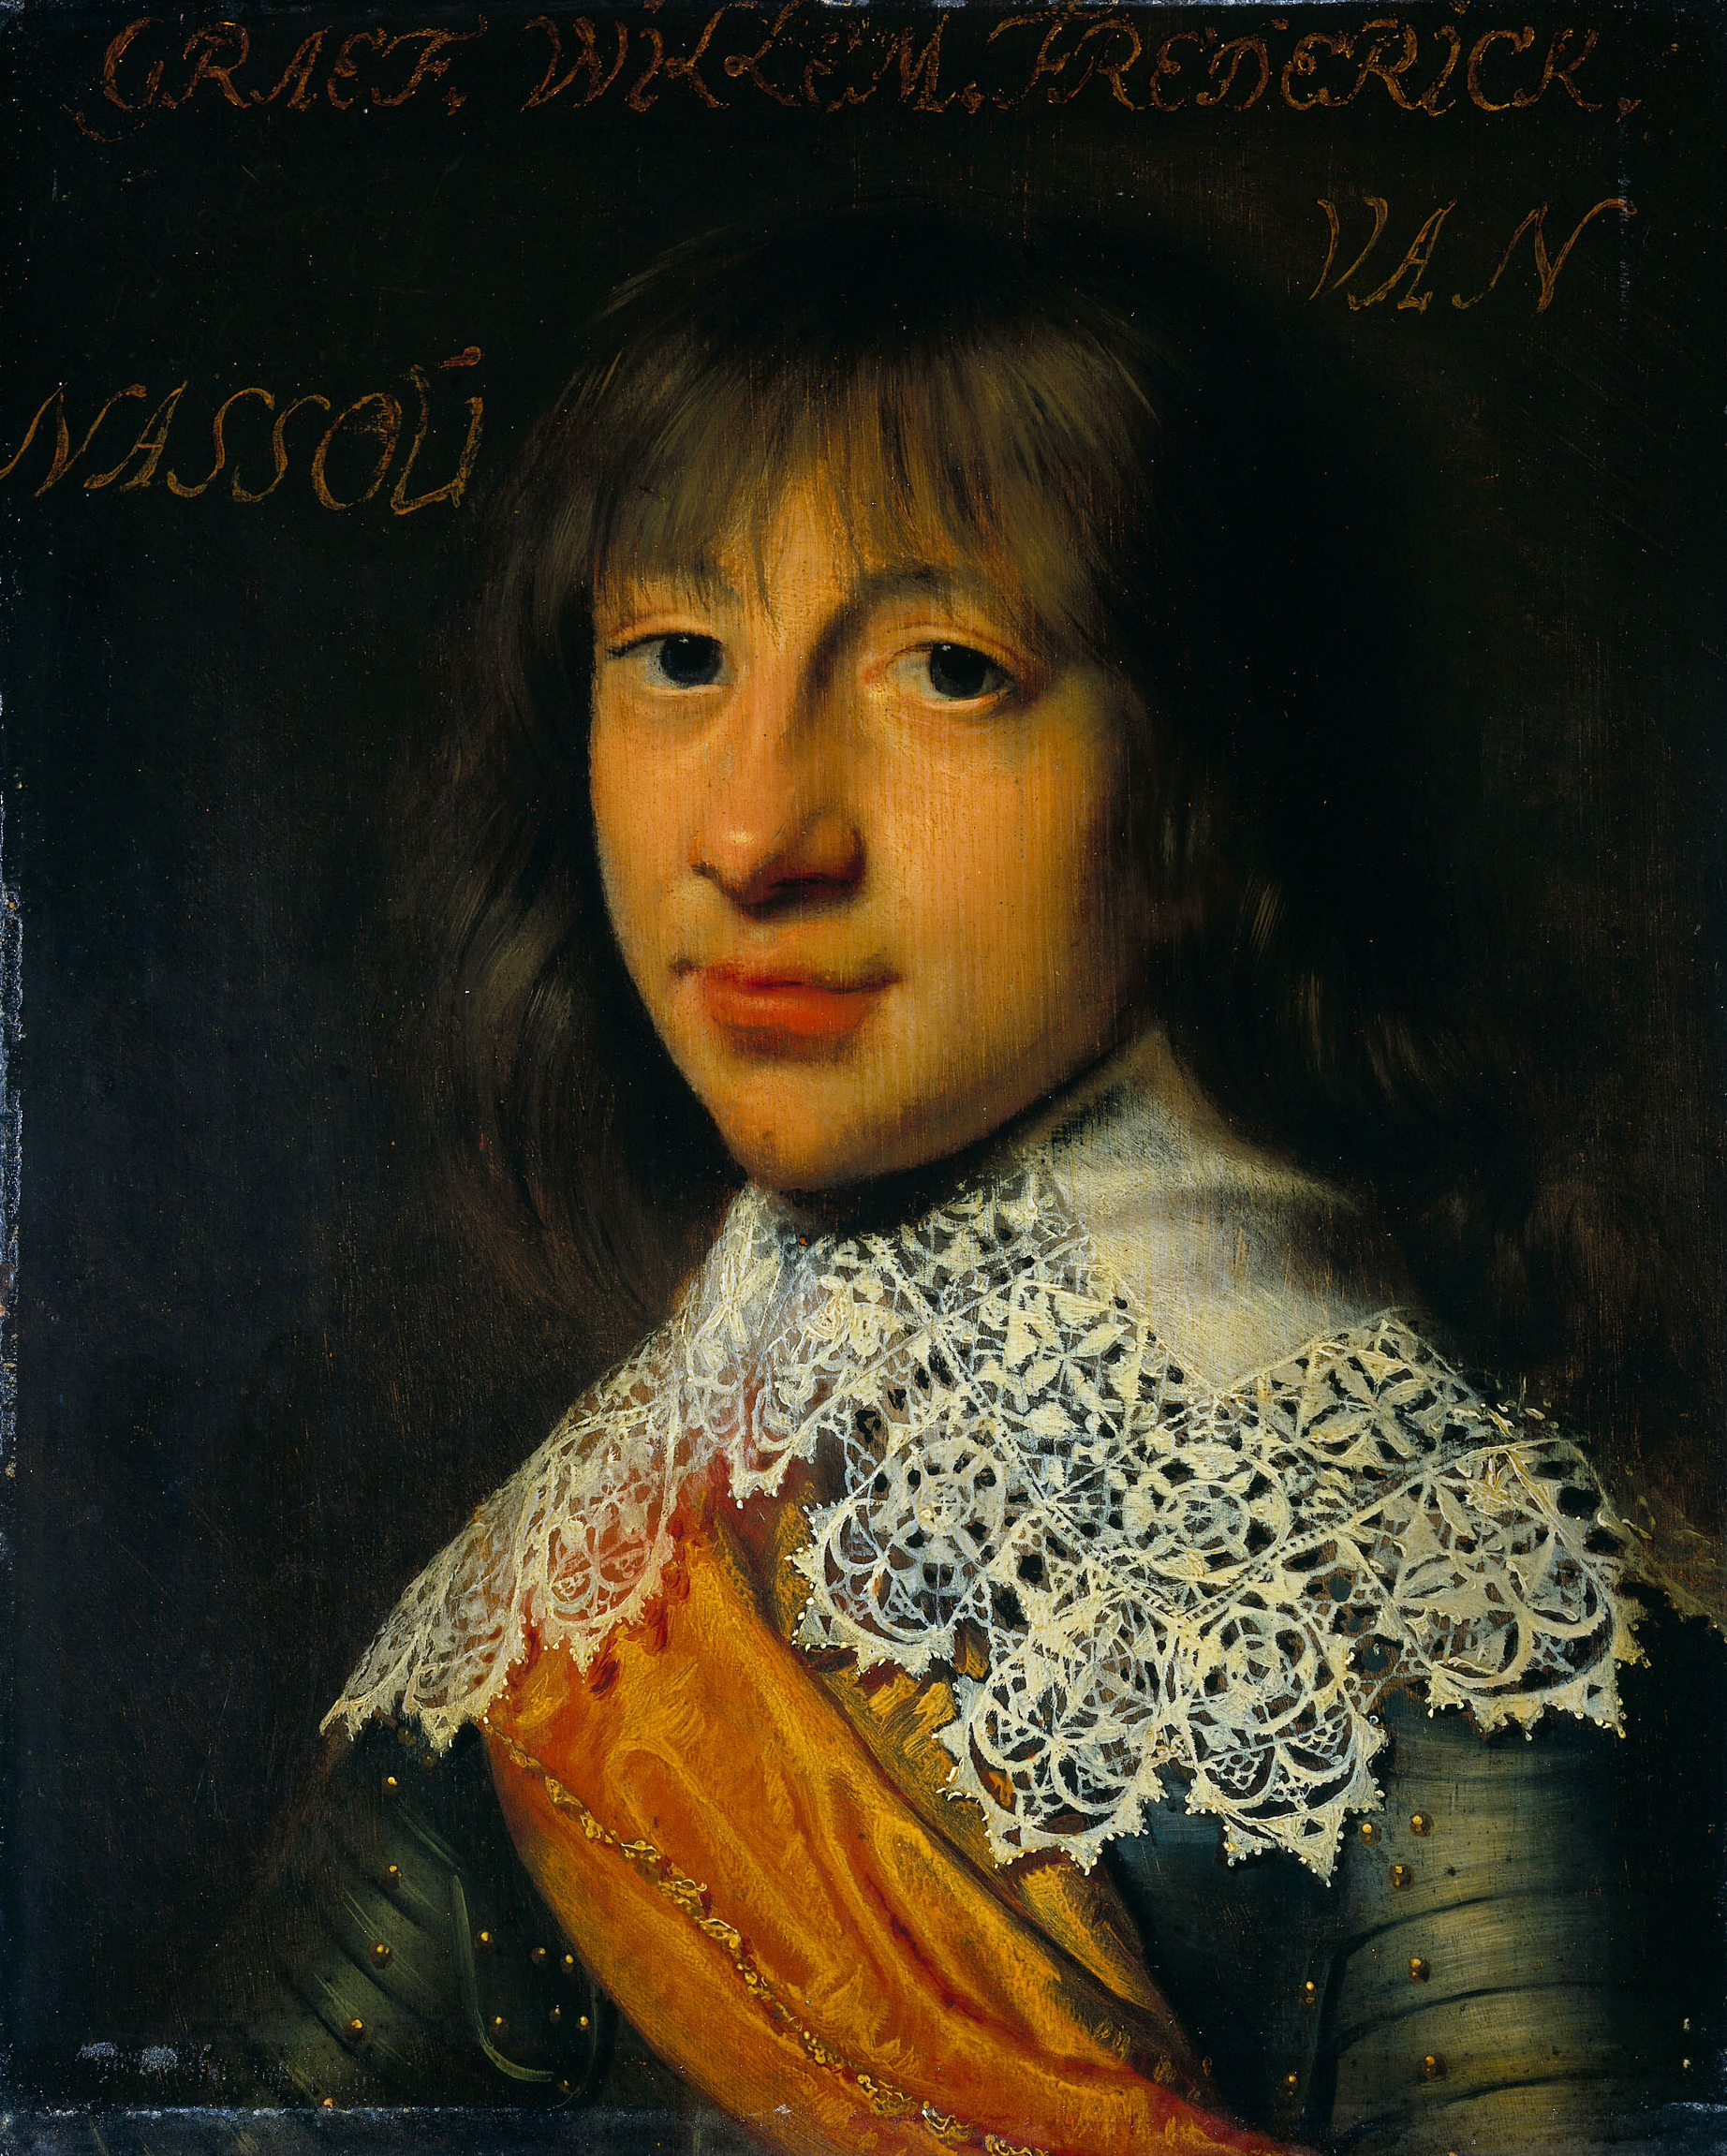 Dit portret uit 1632 is van Willem Frederik van Nassau-Dietz en is onderdeel van de Leeuwarden-serie, een serie portretten van militairen uit de Tachtigjarige Oorlog en leden van het Huis Oranje-Nassau, voor het eerst gedocumenteerd in 1633 in het Stadhouderlijk Hof in Leeuwarden. Het is geschilderd door Wybrand de Geest (1592-1661), olie op paneel, heeft een hoogte van 29.8 cm en een breedte van 24 cm. Het portret is in het bezit van het Rijksmuseum te Amsterdam. Licentie: Publieke Domein.